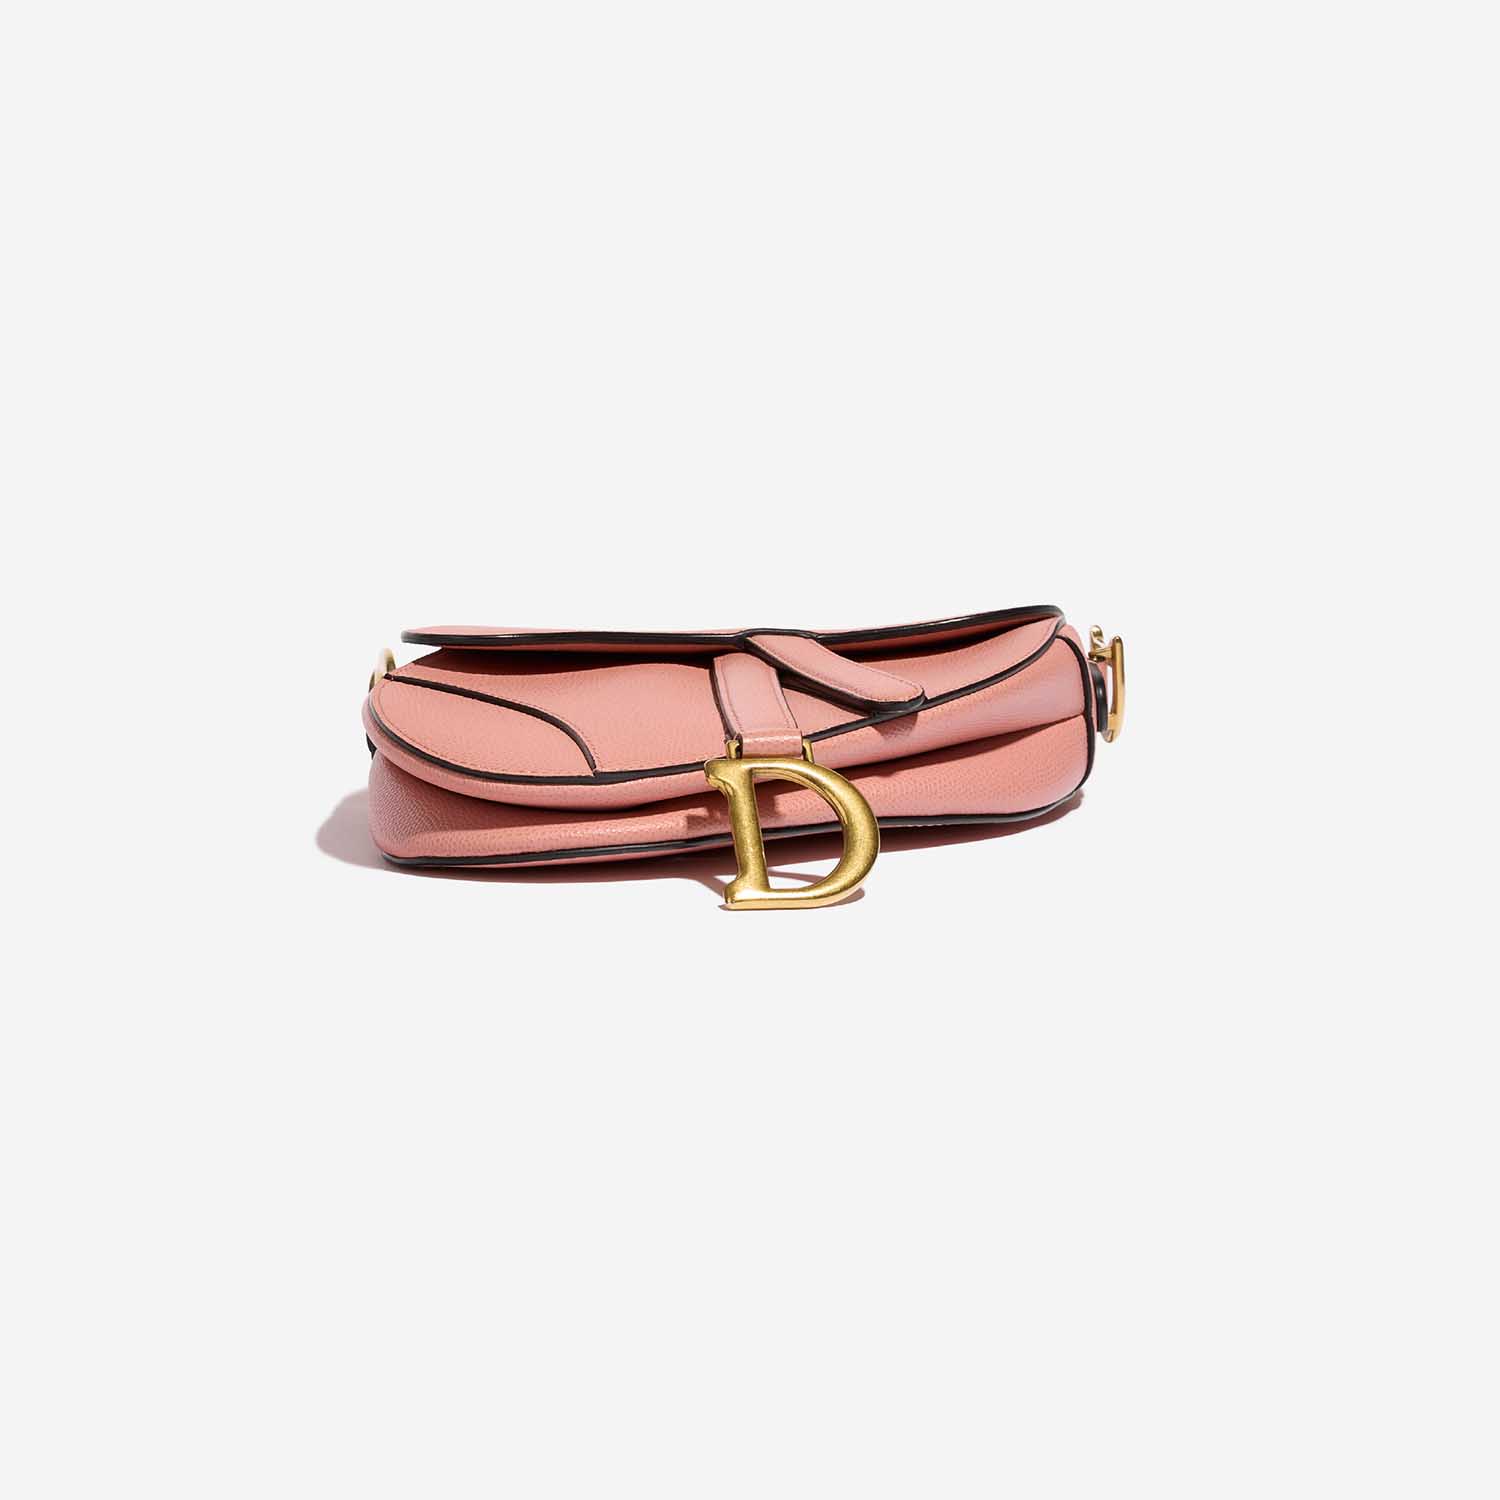 Dior Saddle Mini Pink Bottom | Verkaufen Sie Ihre Designertasche auf Saclab.com